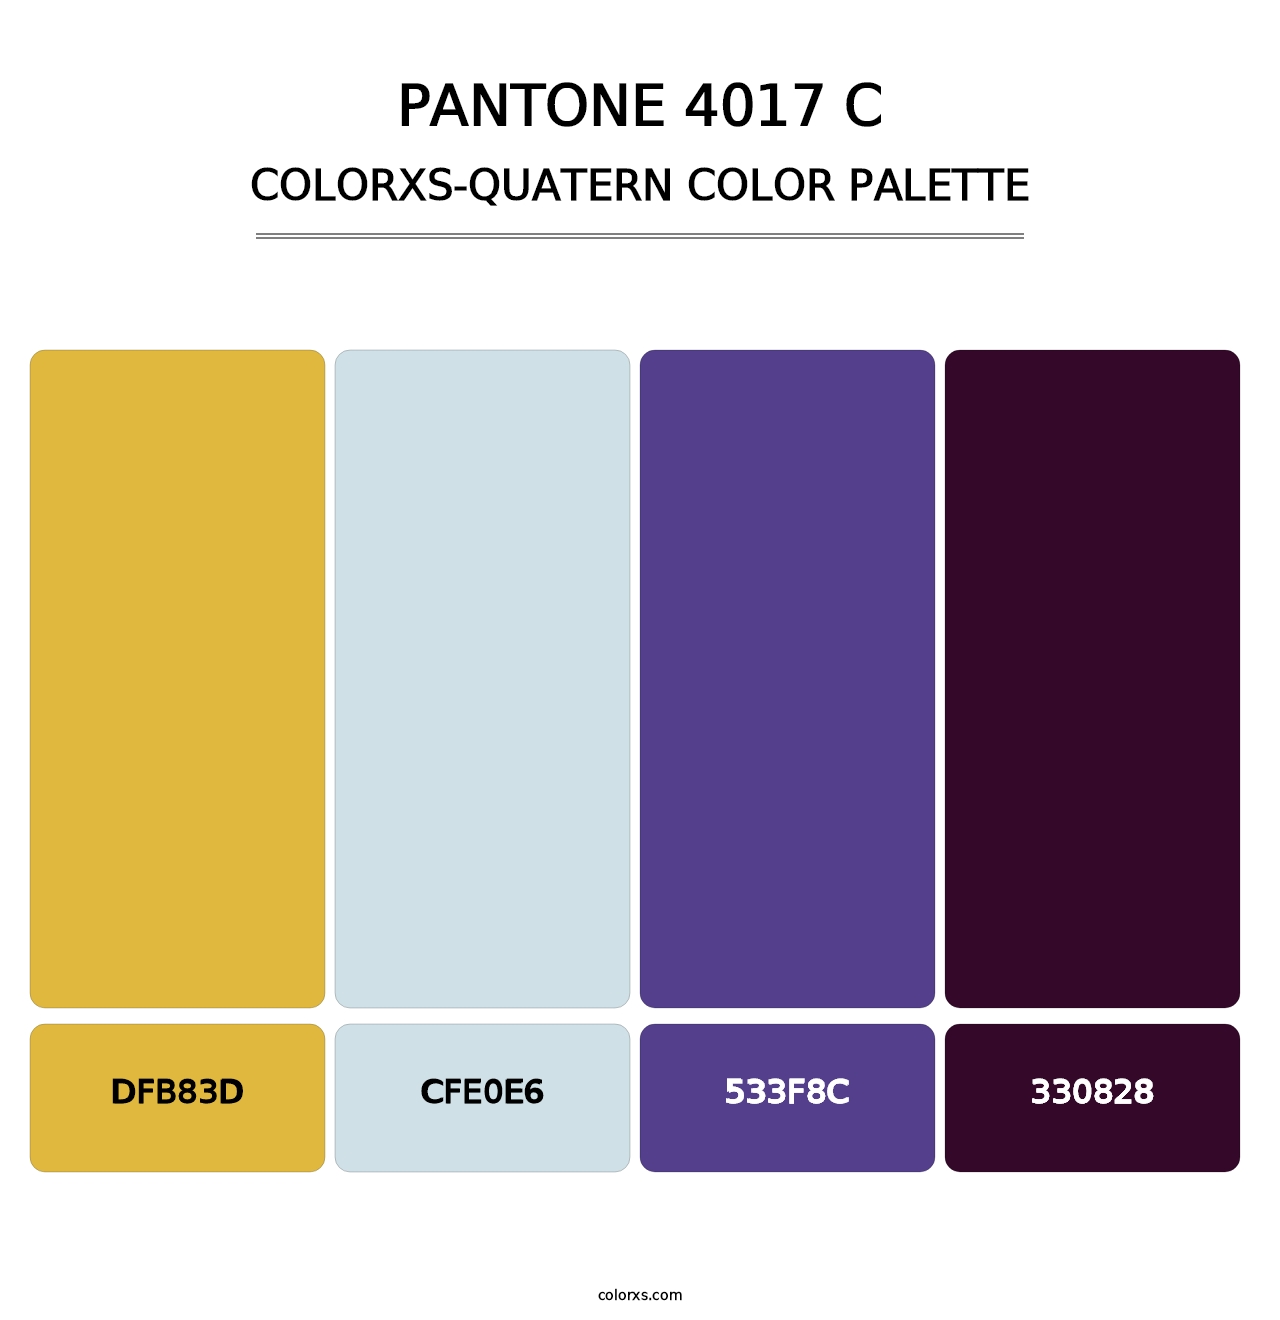 PANTONE 4017 C - Colorxs Quatern Palette